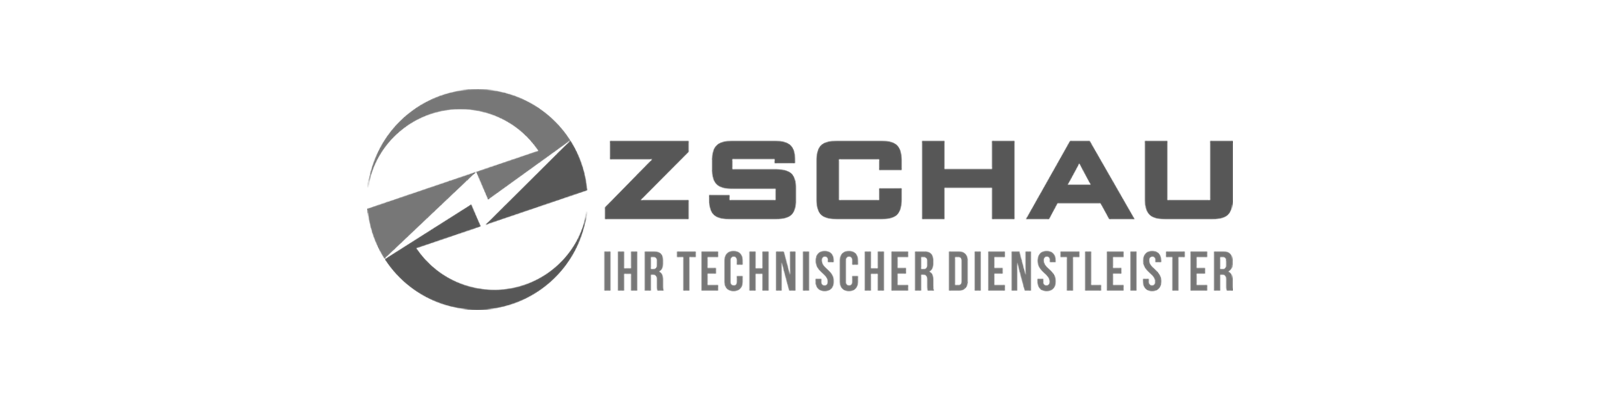 zschau-greyscale-2